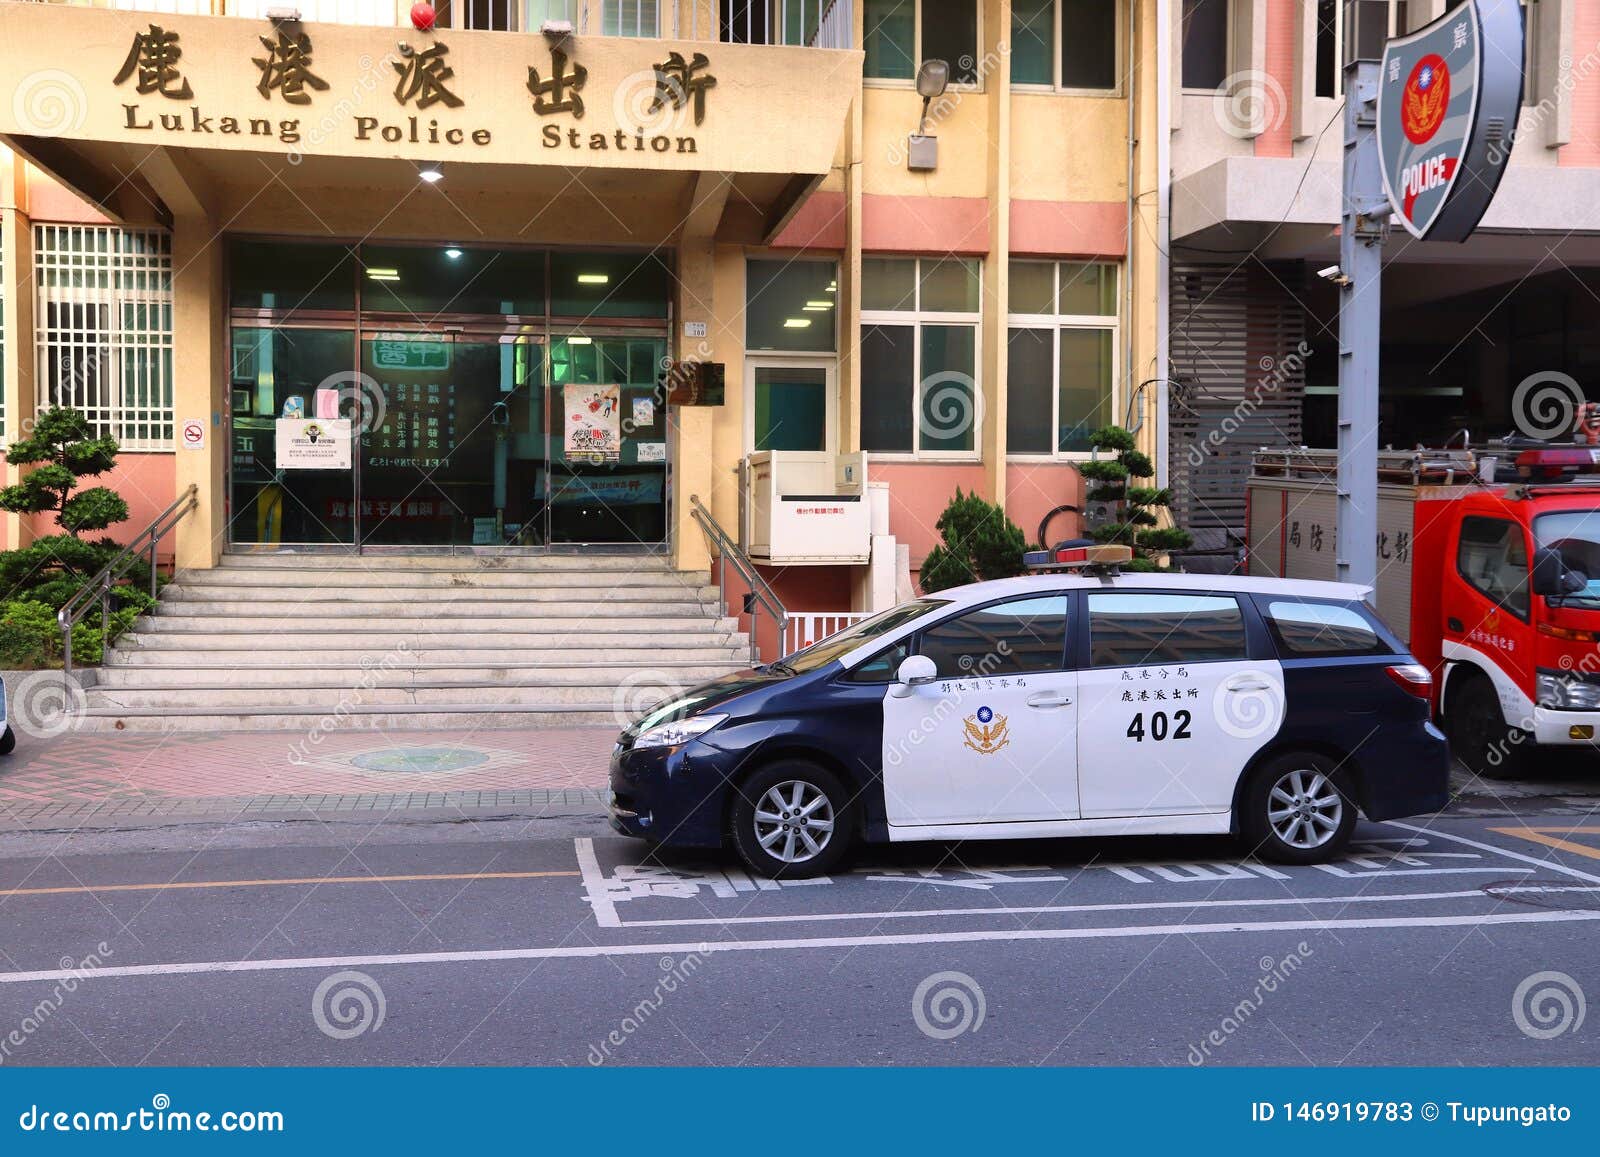 4月18日台湾警察全部换新款警服，竟然表现出了“解放”的意识形态！ - 知乎